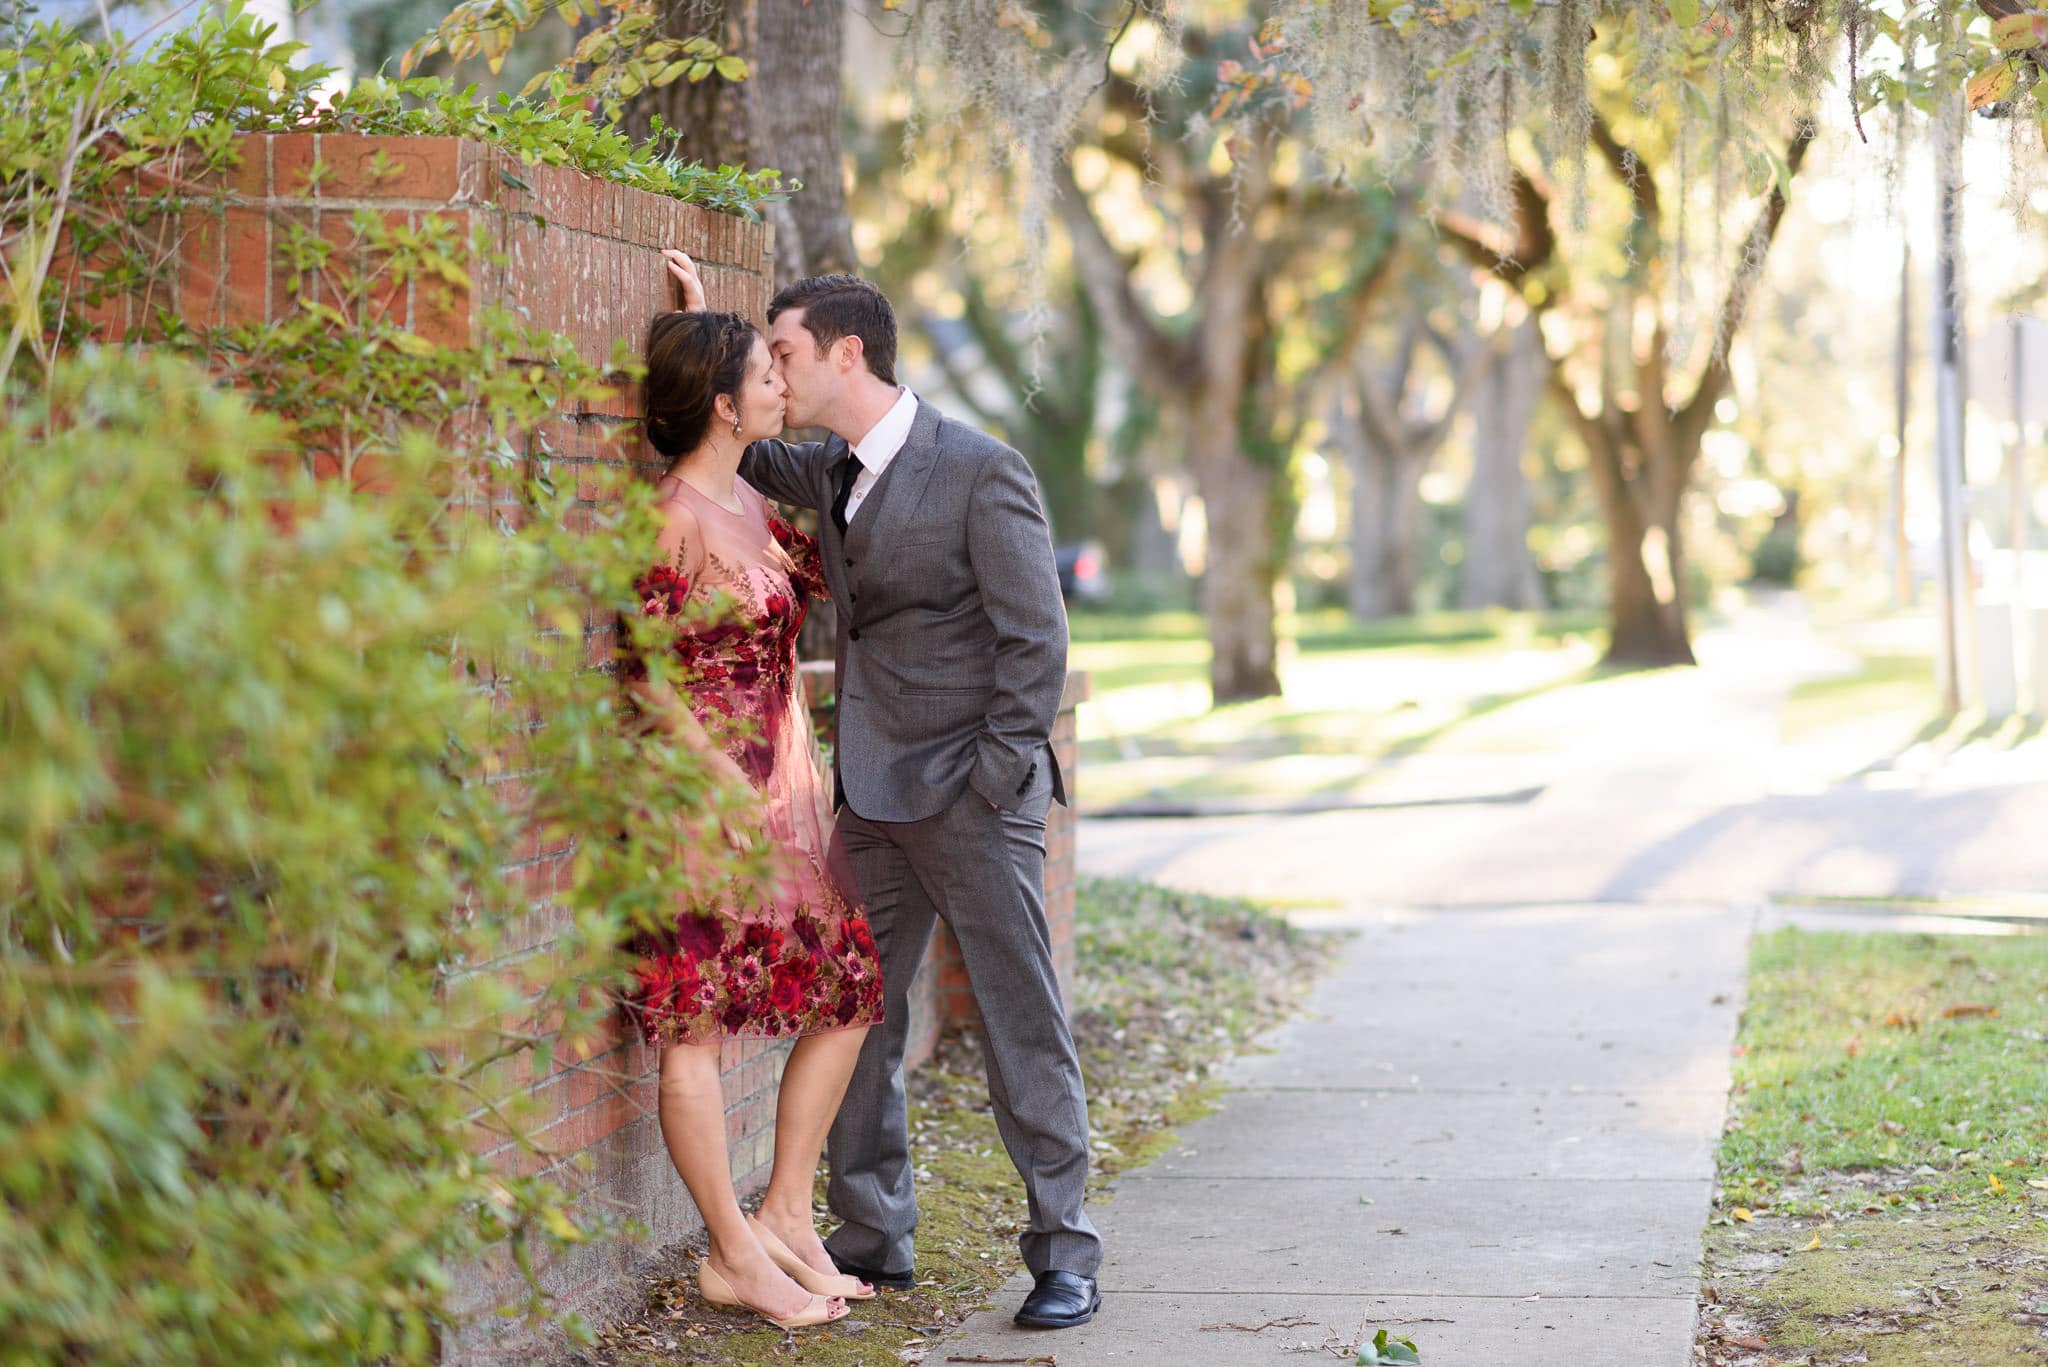 Kiss against a brick wall - Oak Street, Conway, SC